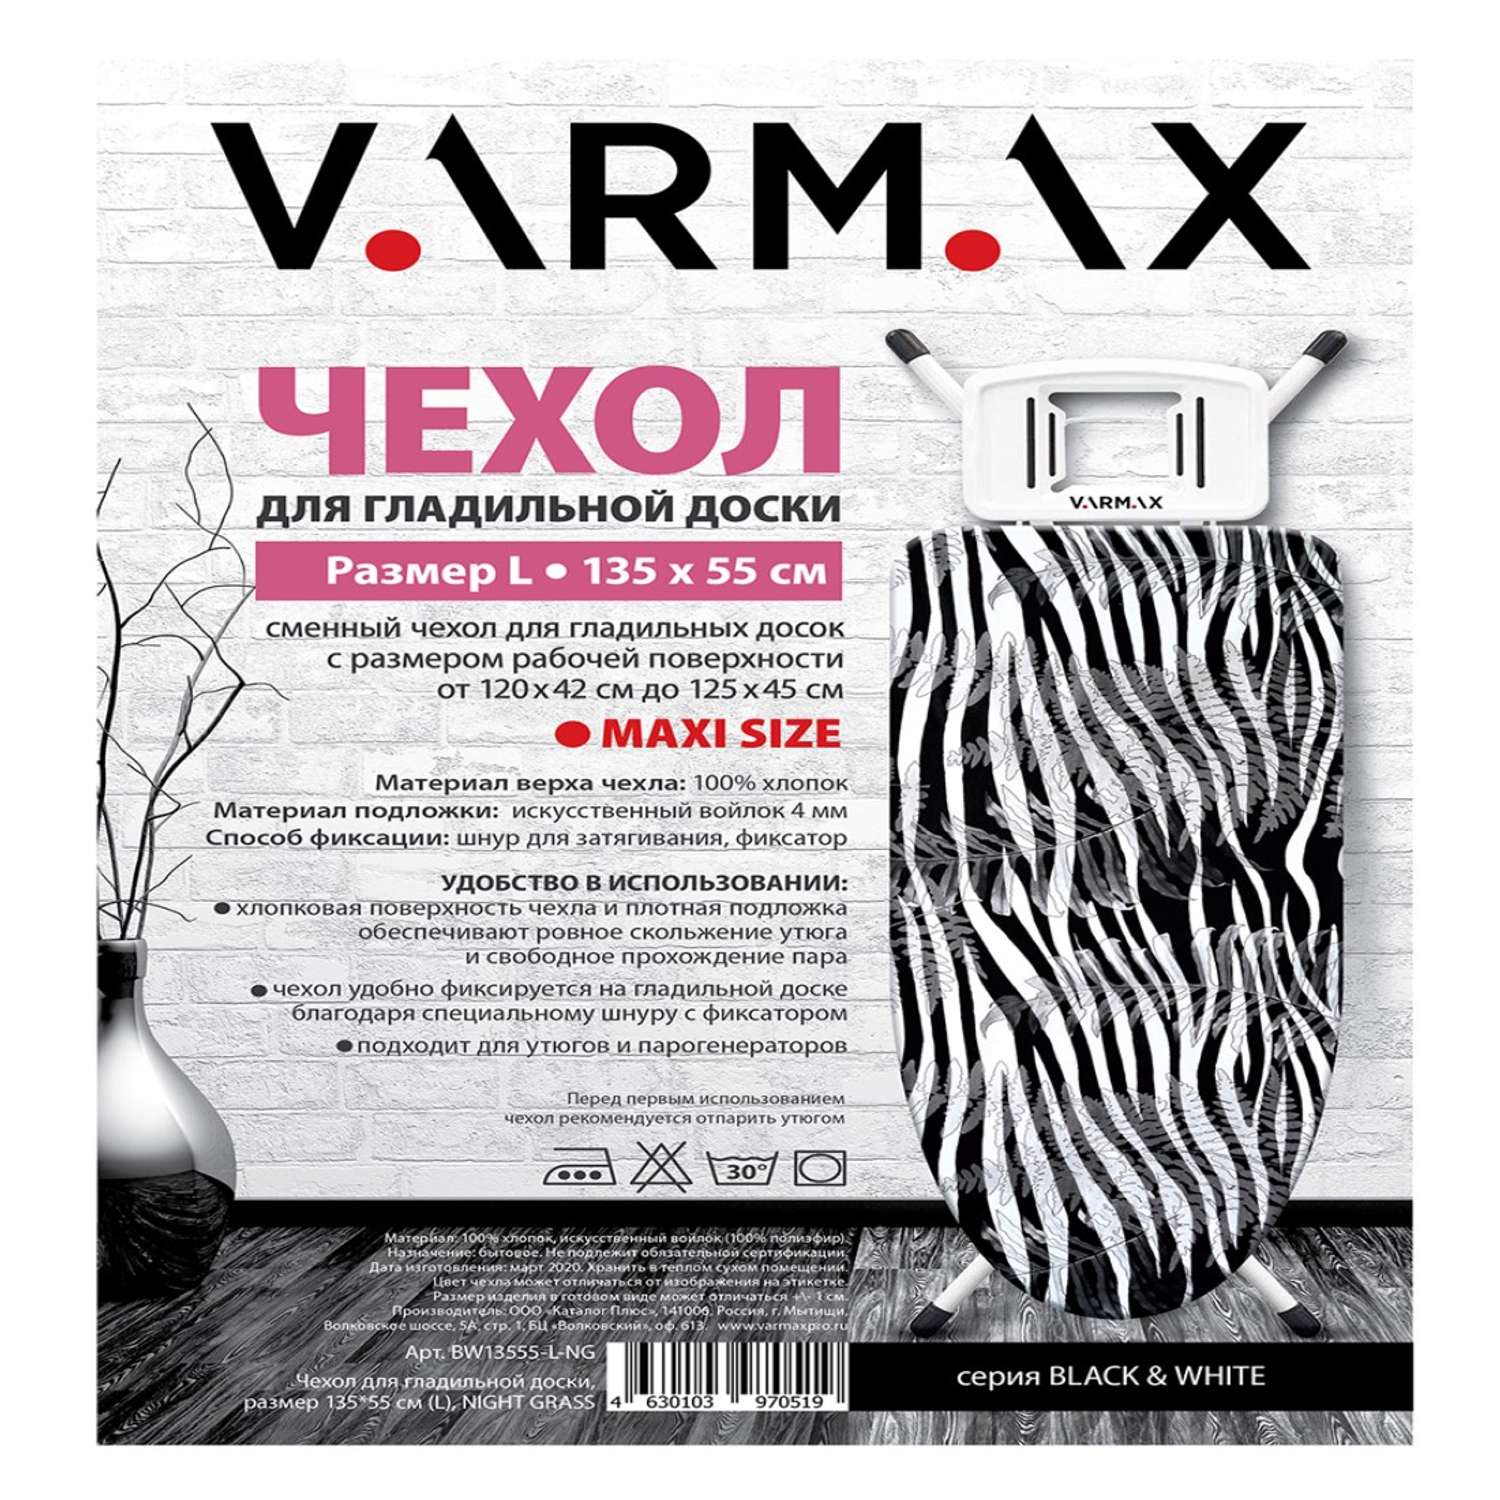 Чехол для гладильной доски Varmax 135*55 см L night grass - фото 2